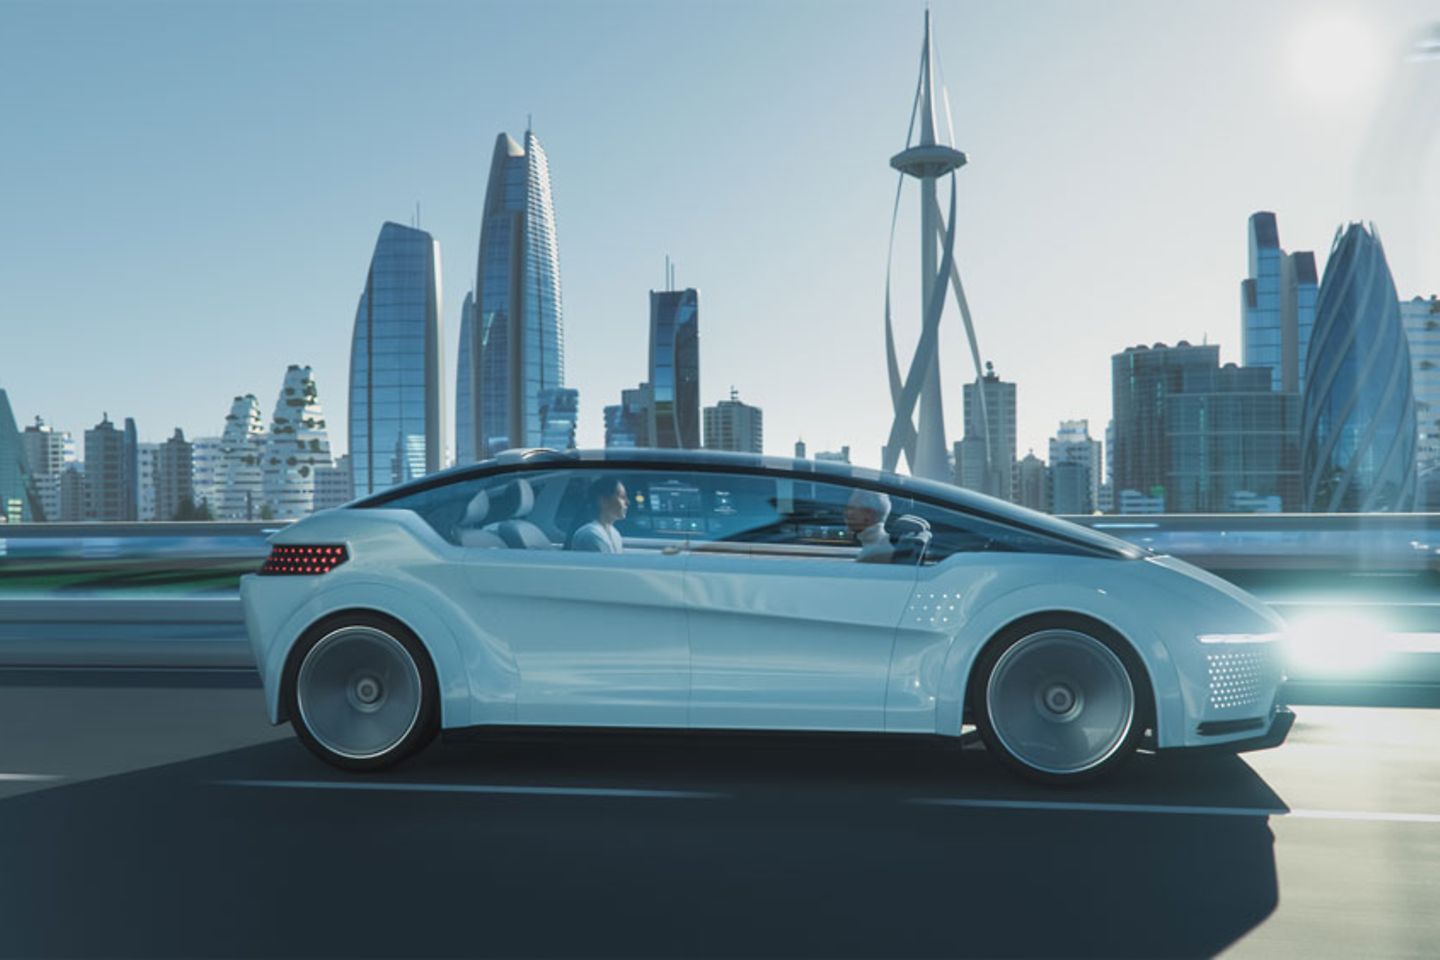 Foto de um carro futurista circulando em uma rua com arranha-céus ao fundo